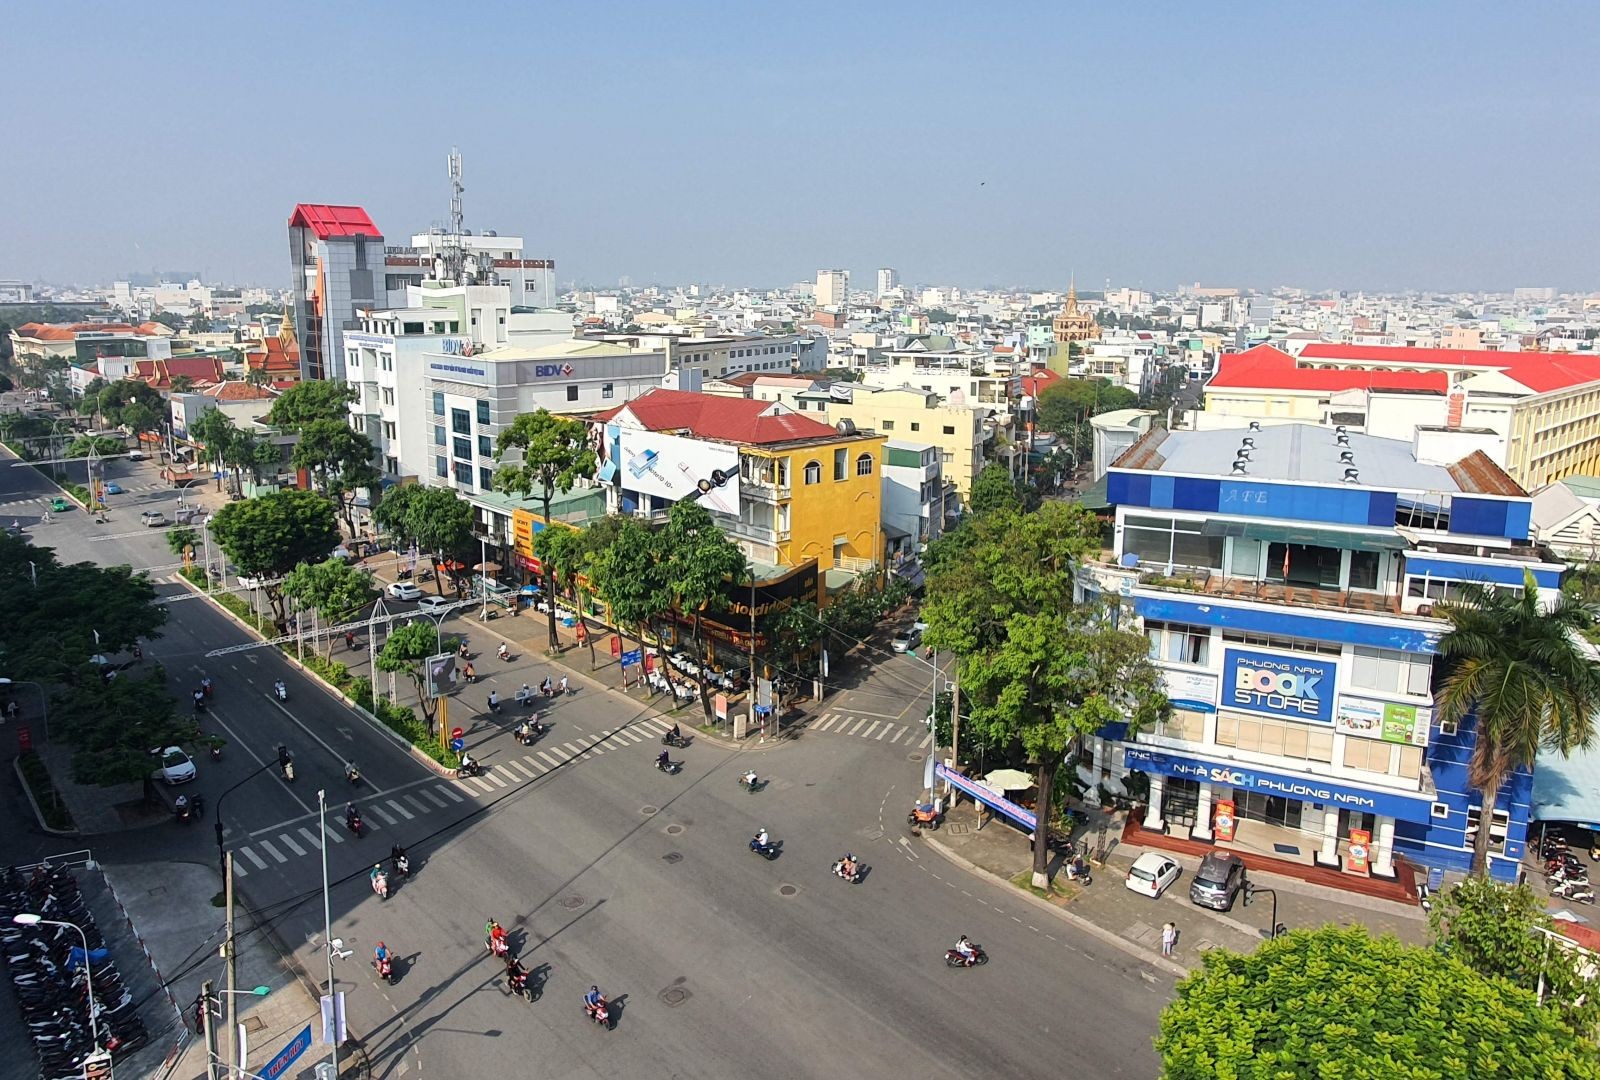 
Quận Ô Môn là quận có quy mô công nghiệp lớn thứ 2 của thành phố Cần Thơ và đóng vai trò quan trọng trong việc phát triển kinh tế xã hội của thành phố
